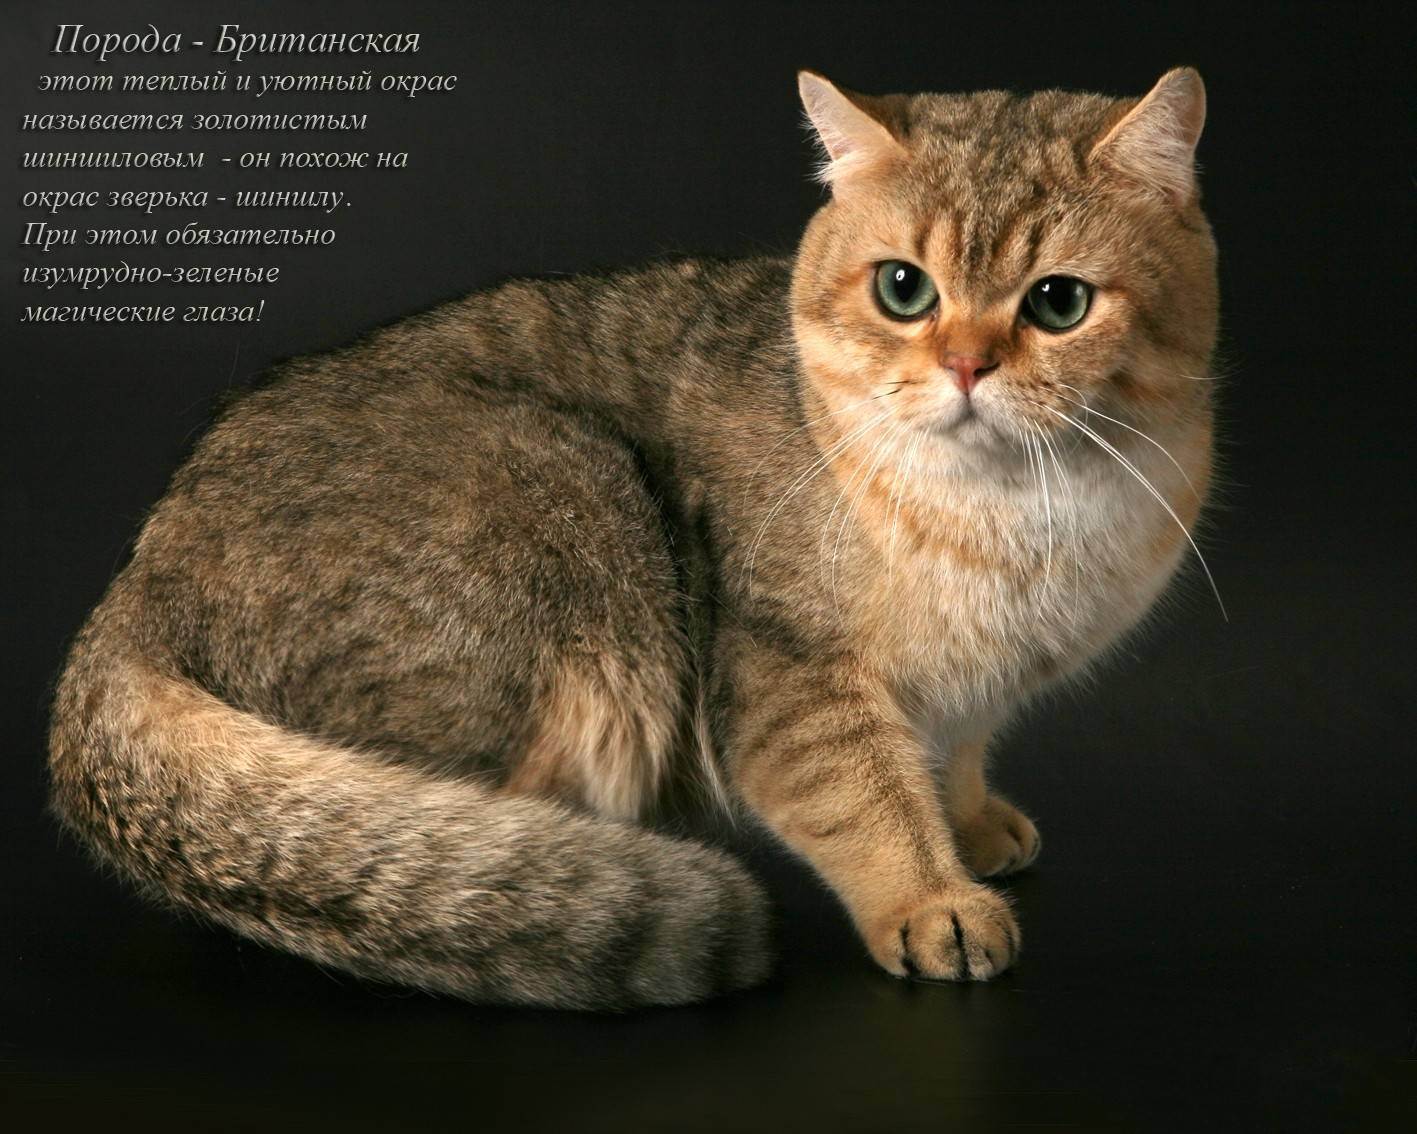 Фото самых красивых котов в мире: топ 10 пород